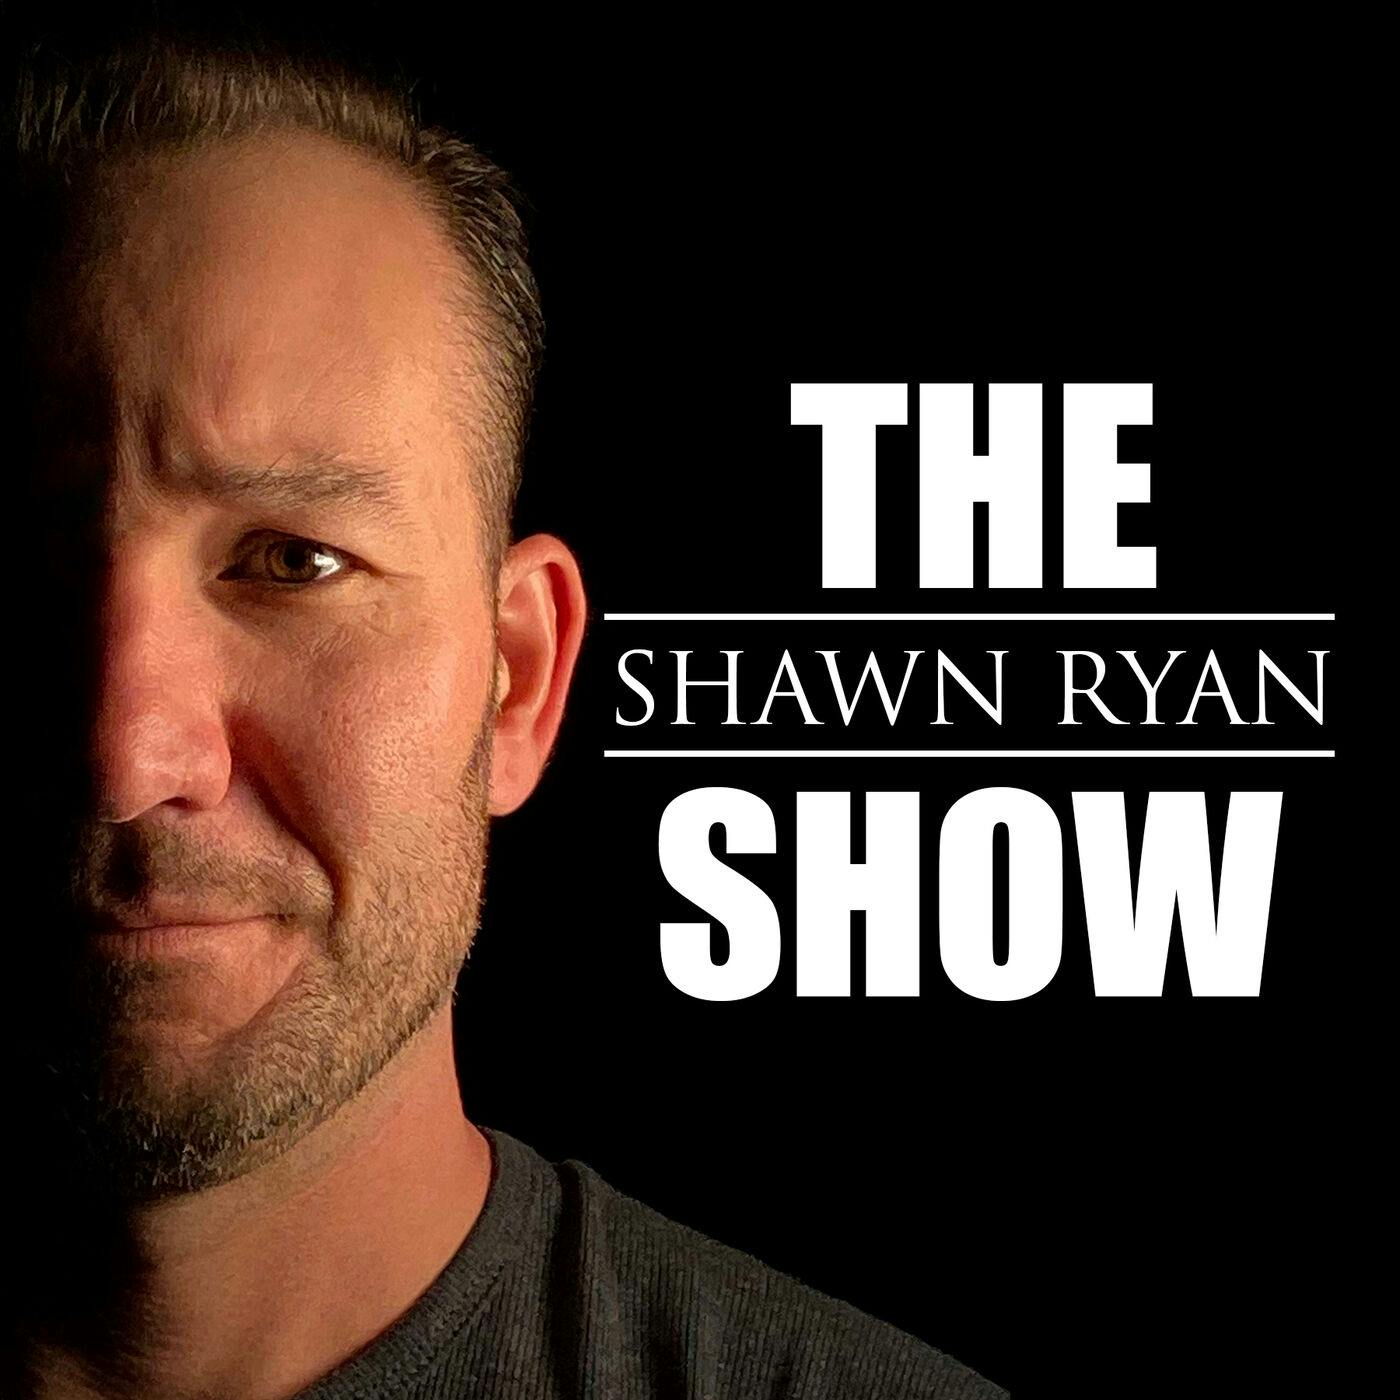 Shawn Ryan Show by Shawn Ryan | Cumulus Podcast Network